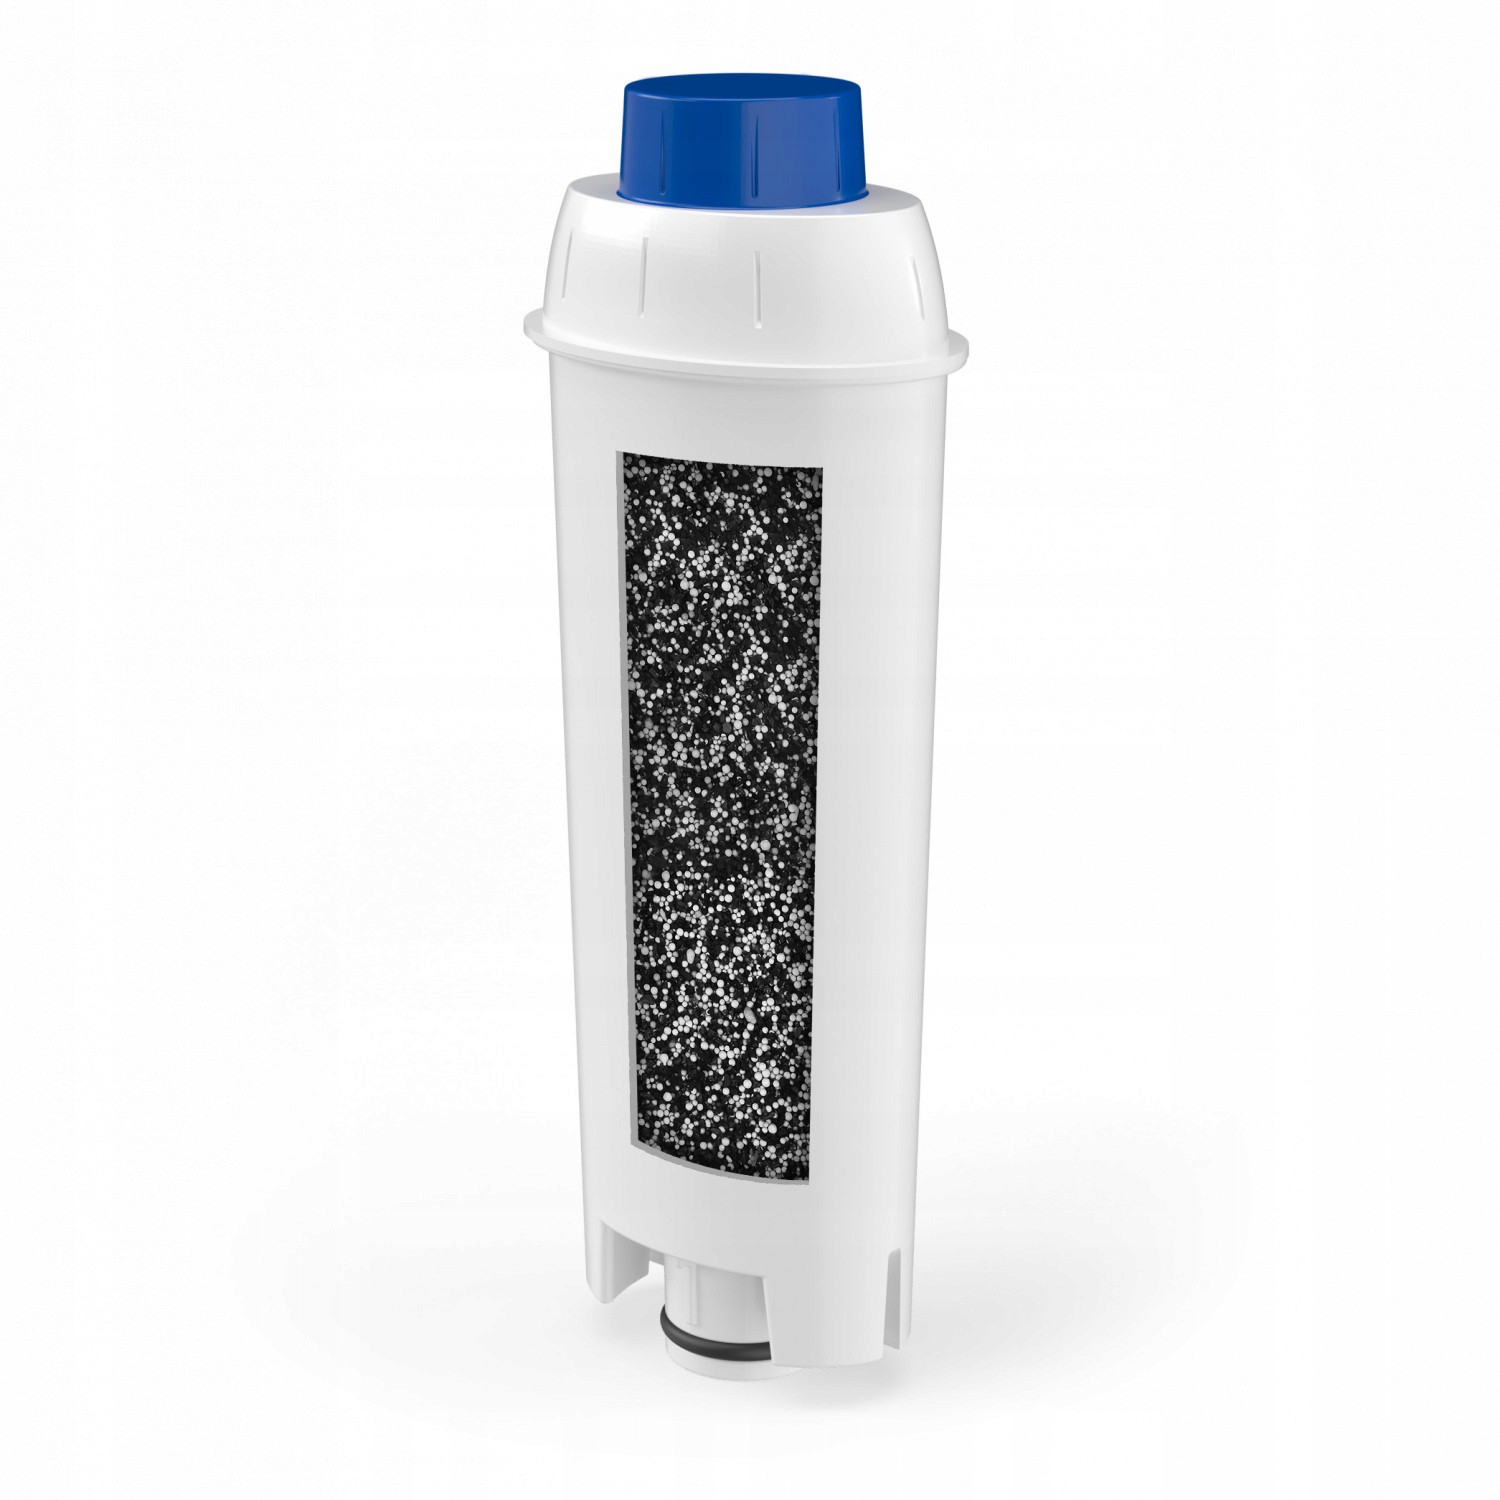 Vodní filtr pro kávovar DeLonghi SER3017 DLS C002 megamix.shop